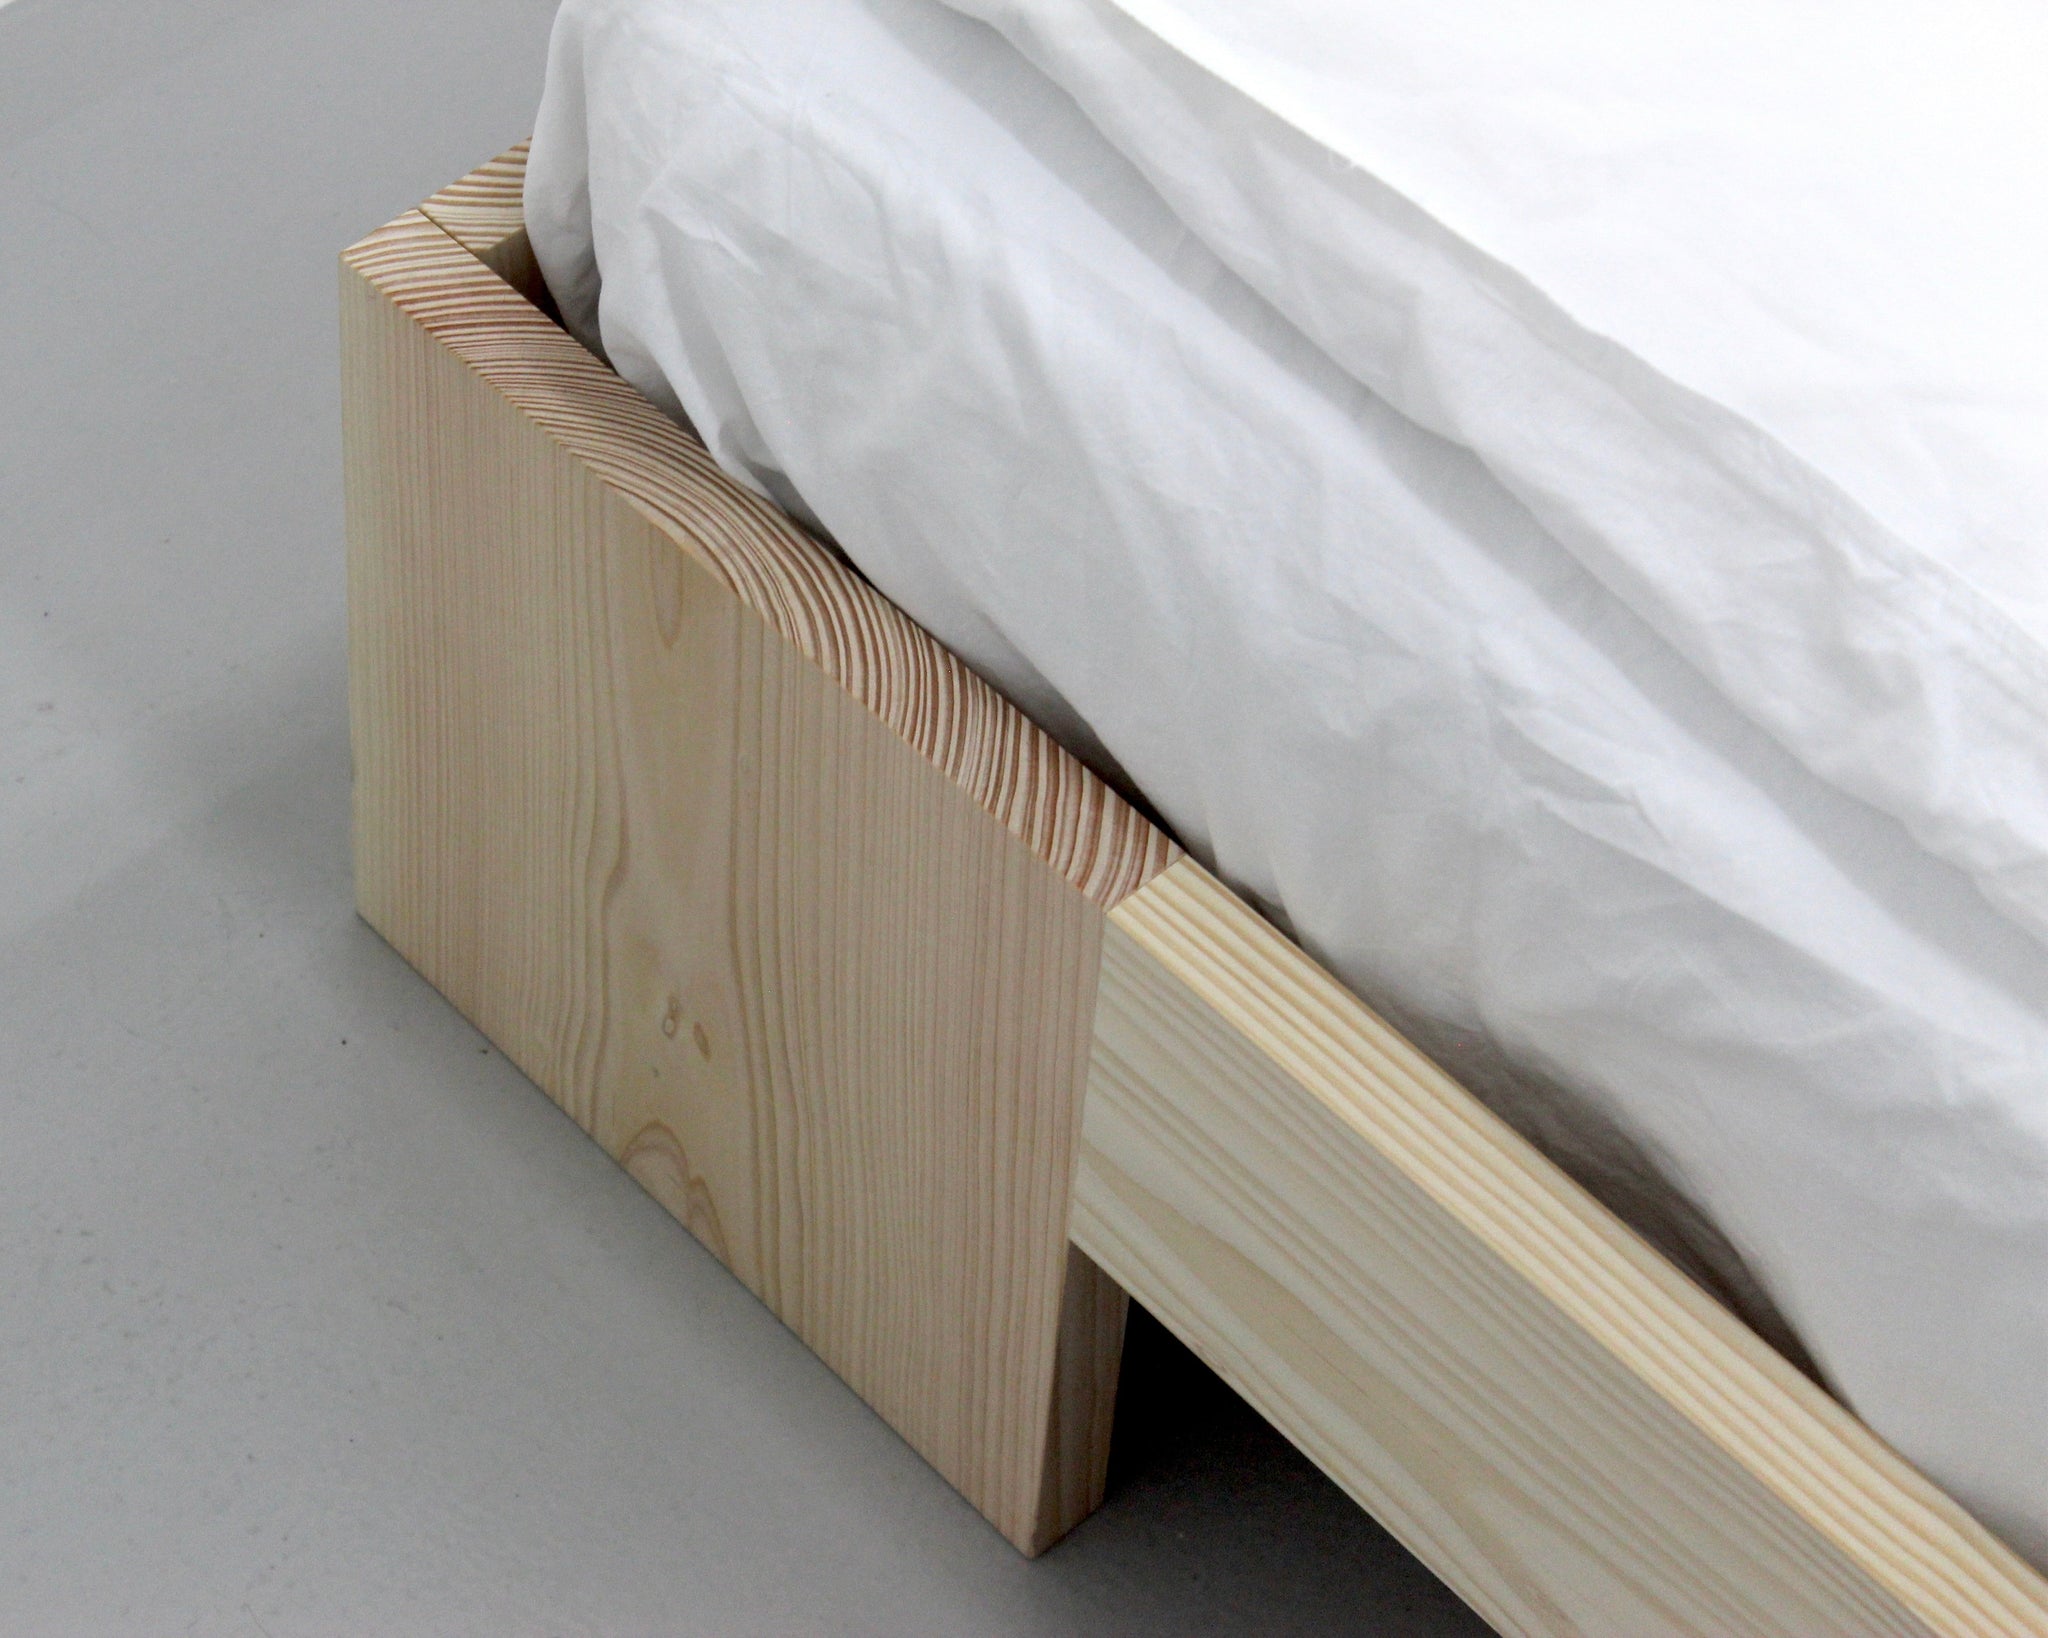 UENO Tunnel Bed Frame, beds, sengeramme, seng, scandinavian design, nordic design, minimalism